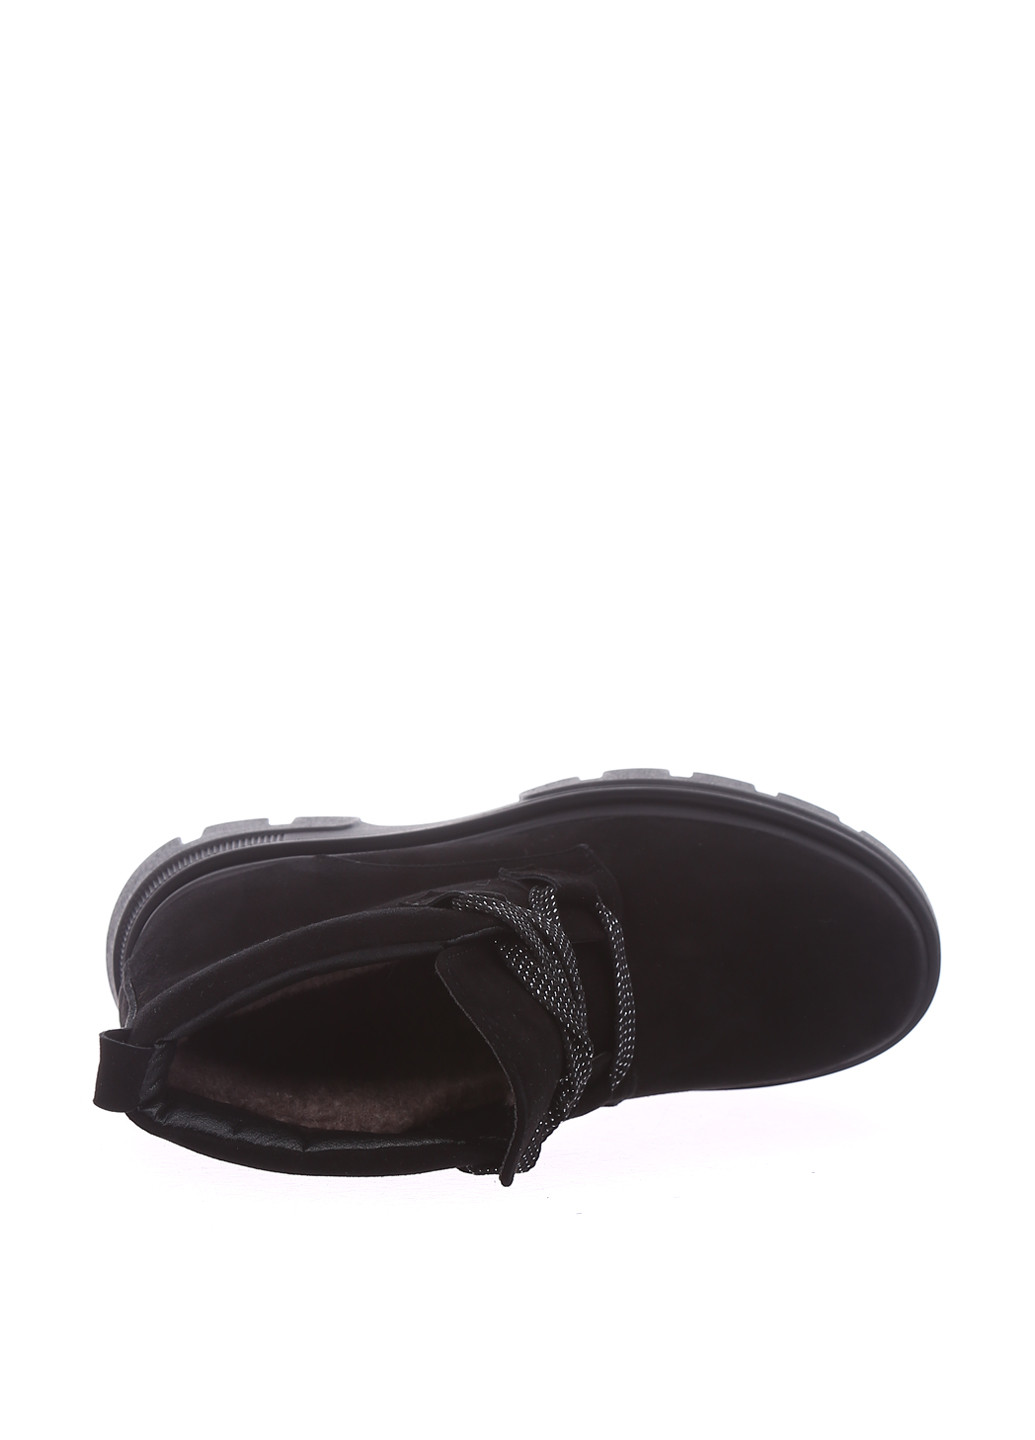 Зимние ботинки Tucino без декора из натуральной замши